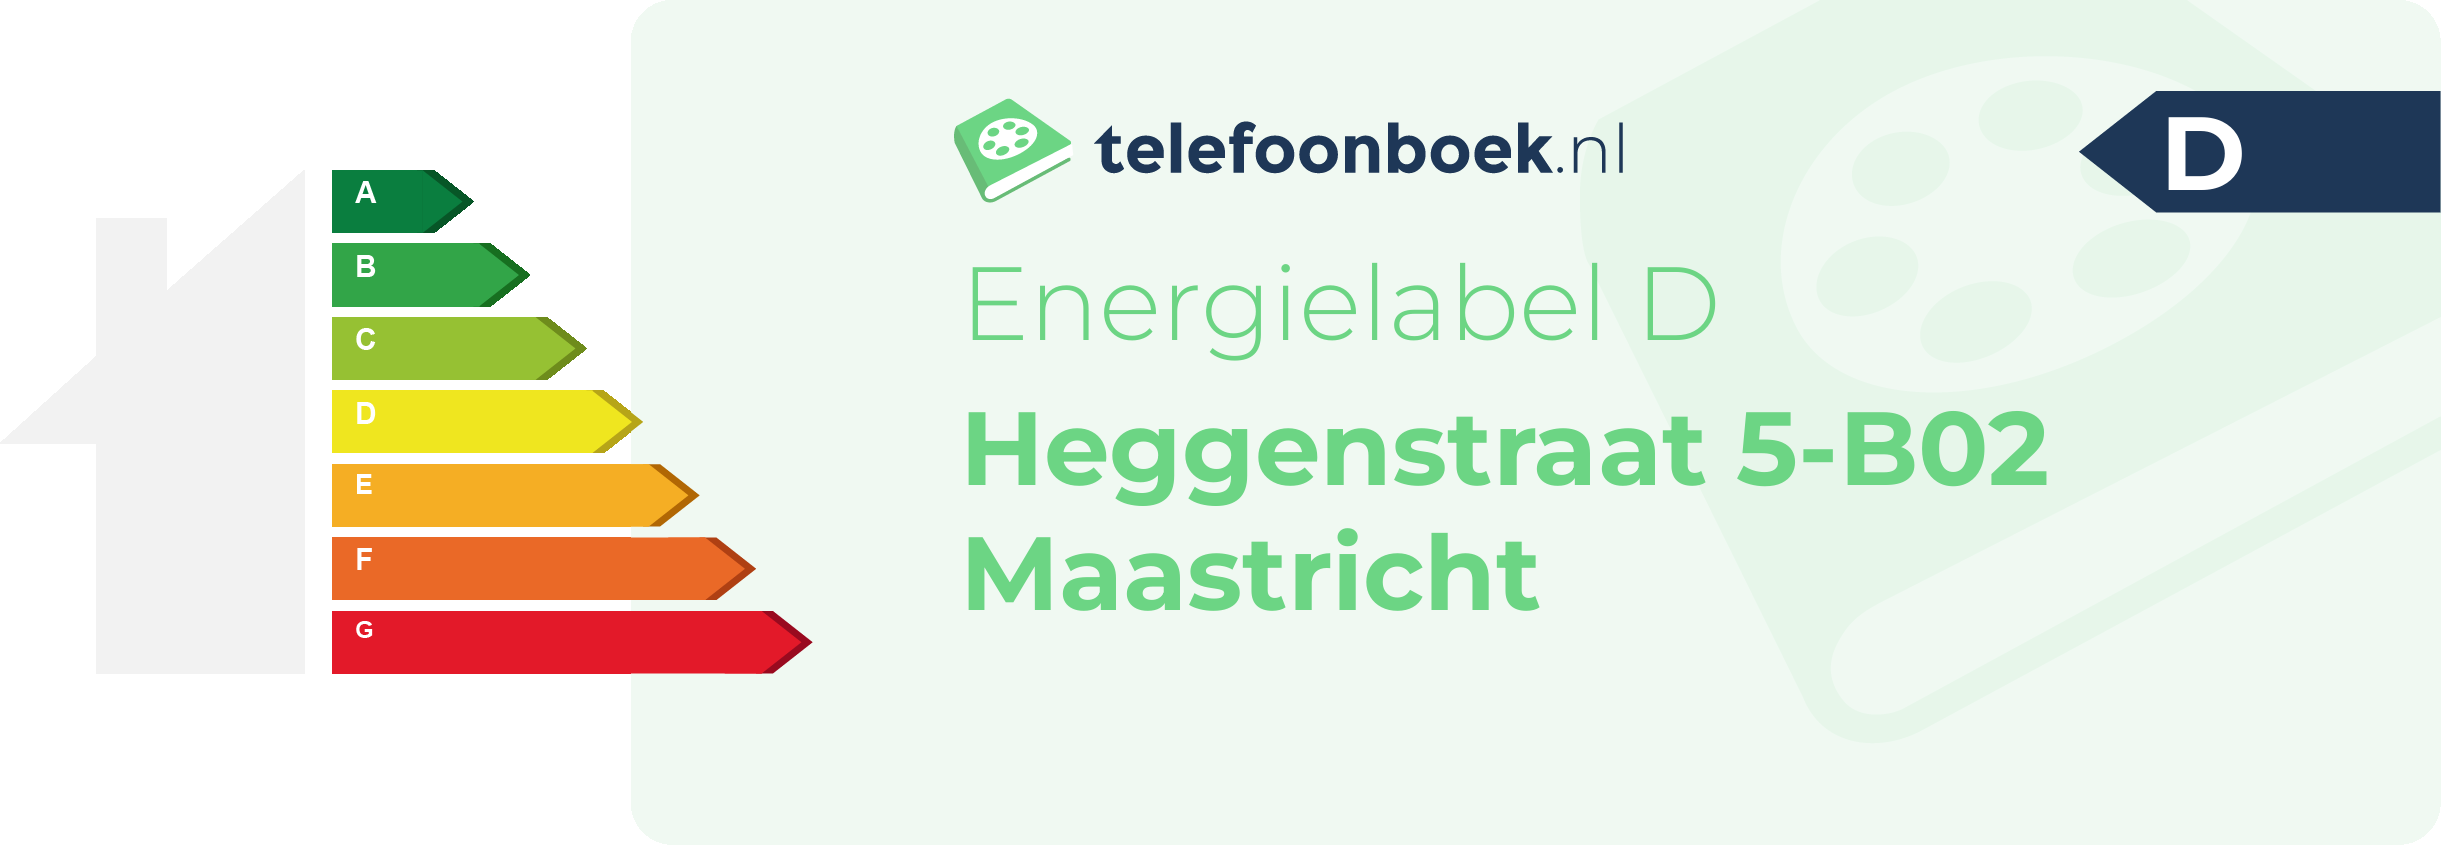 Energielabel Heggenstraat 5-B02 Maastricht